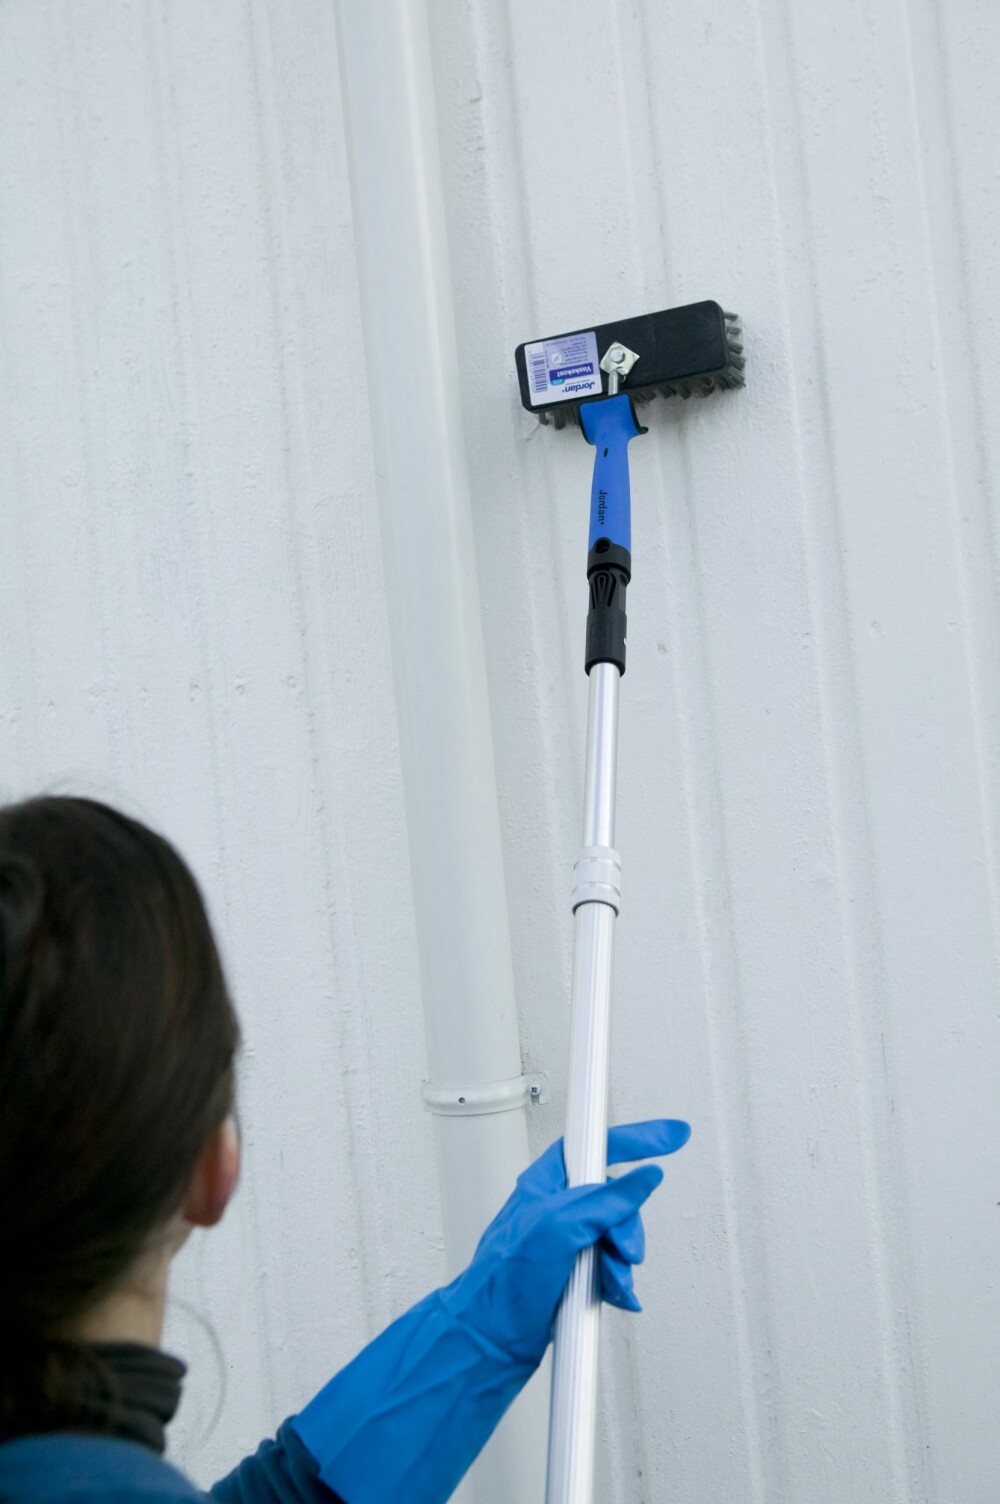 VASK MED KOST: Bruk en halvstiv børste eller kost når du skal vaske veggene.